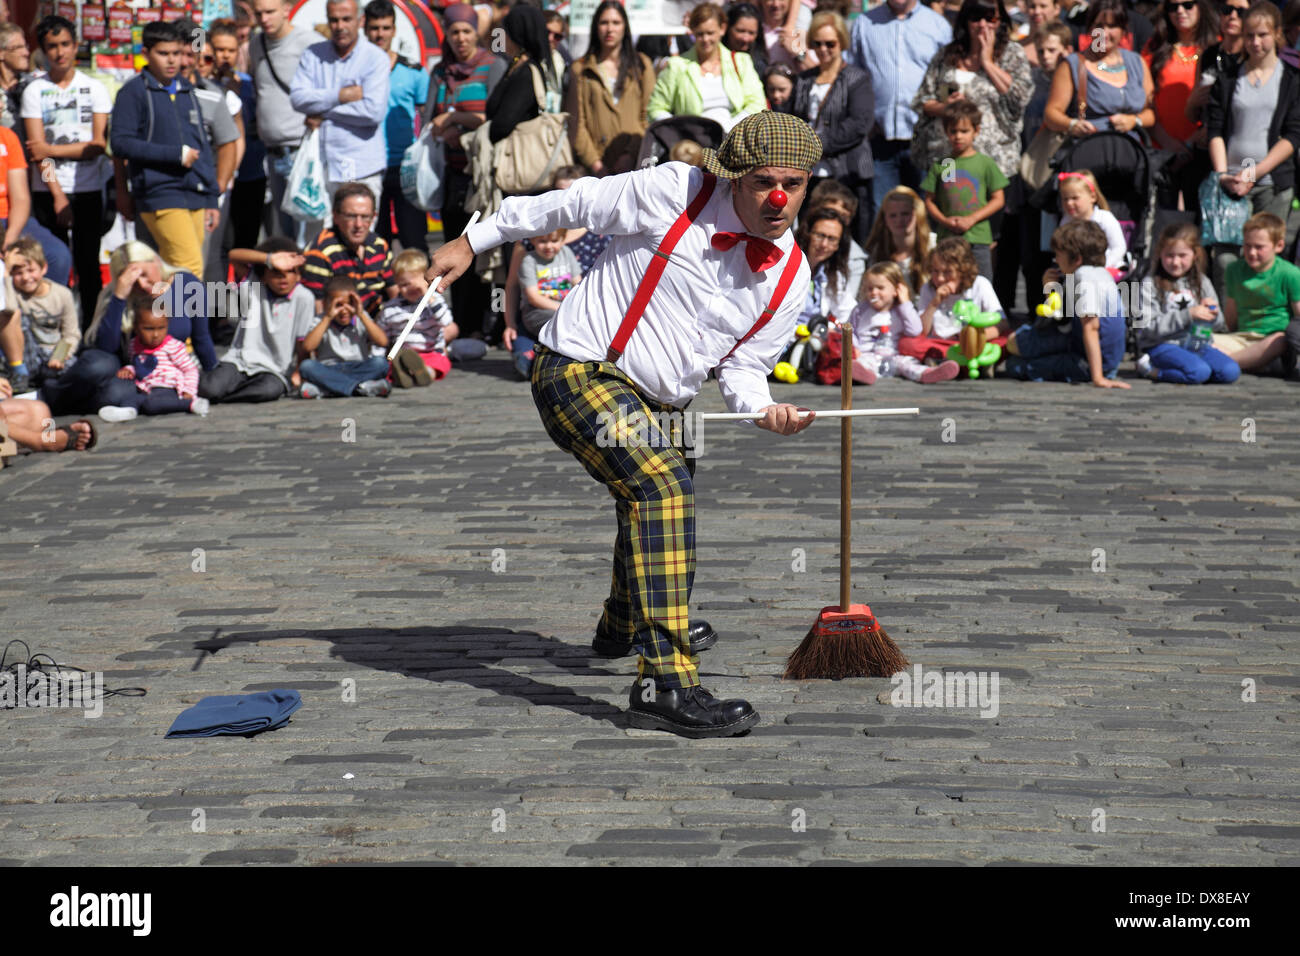 Il comico portoghese Pedro Tochas di Street Performer intrattiene una folla sul Royal Mile all'Edinburgh International Festival Fringe, Scozia, Regno Unito Foto Stock